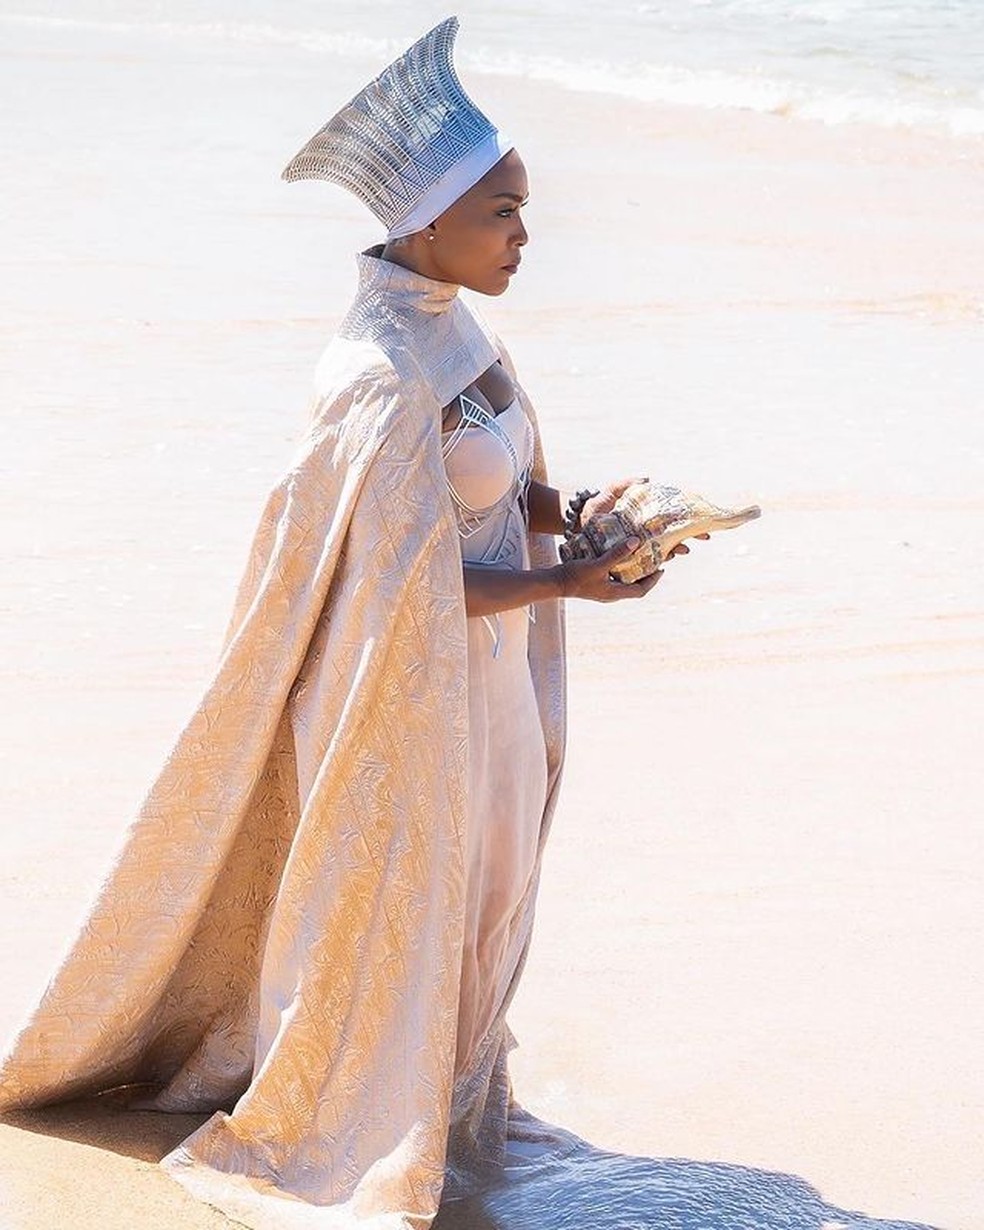 A arquiteta Julia Koerner trabalhou ao lado da figurinista Ruth E. Carter no design das roupas usadas pelas personagens em "Wakanda Forever" e "Pantera Negra", da Marvel — Foto: Marvel / Disney | Instagram / @koernerjulia / Reprodução